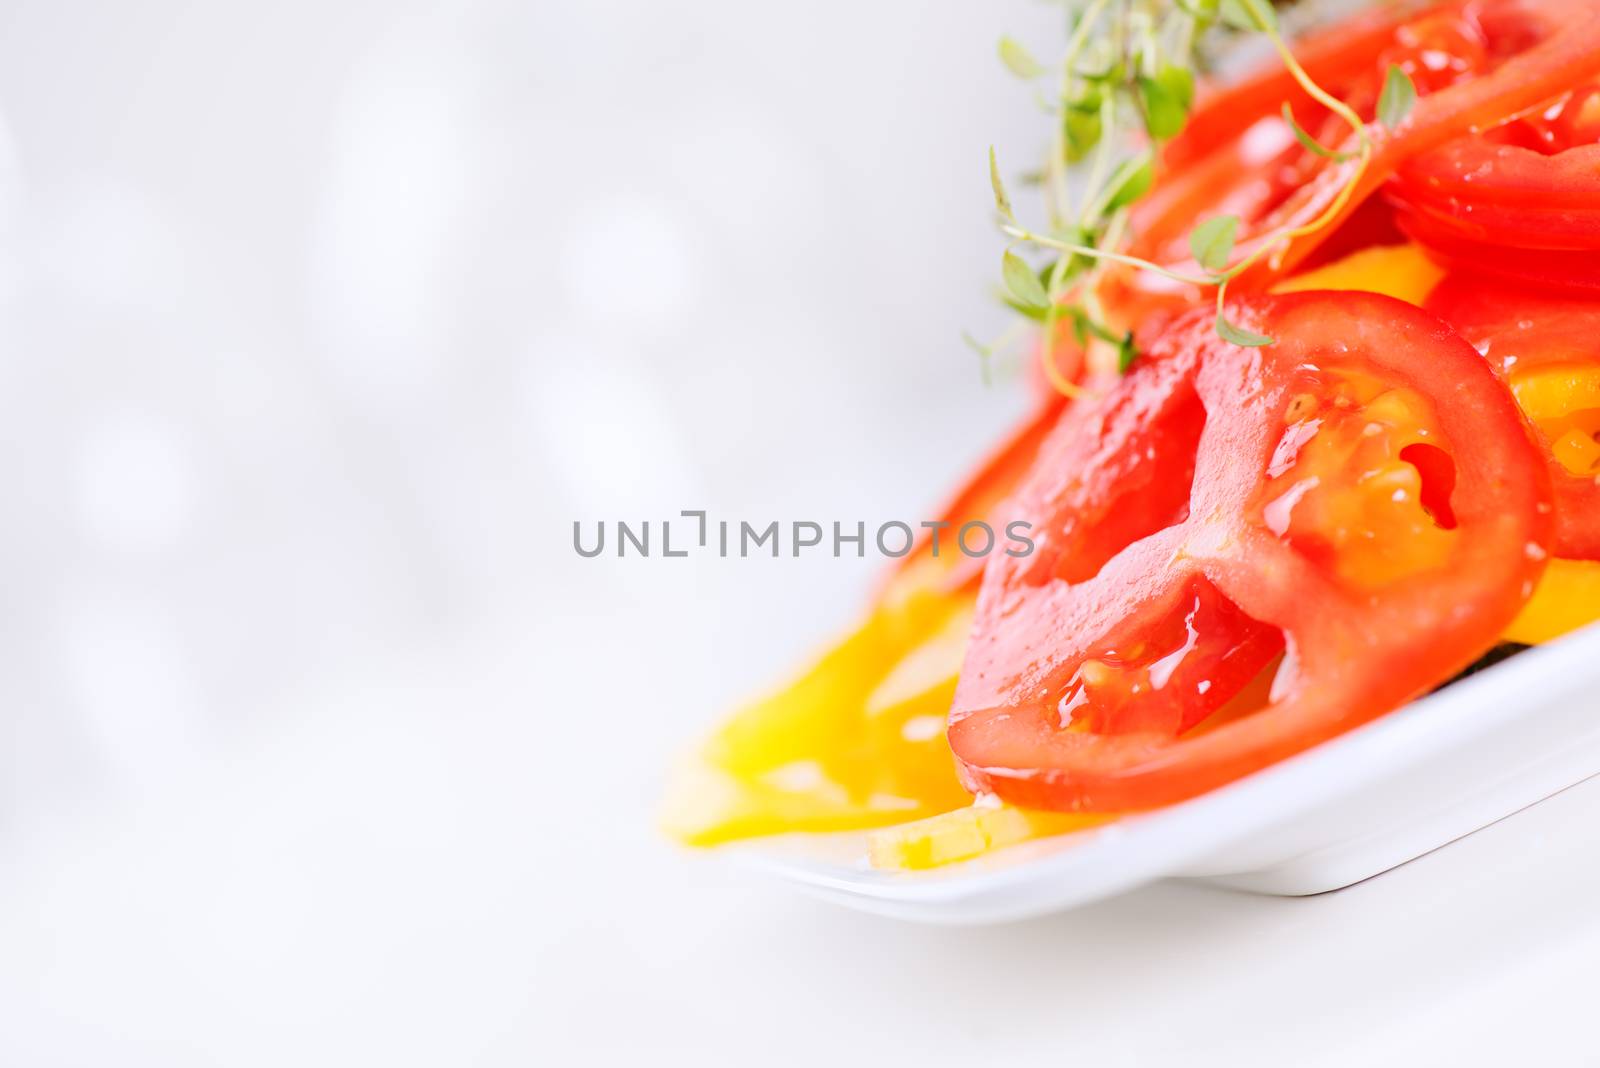 Vegetable salad on plate by Nanisimova